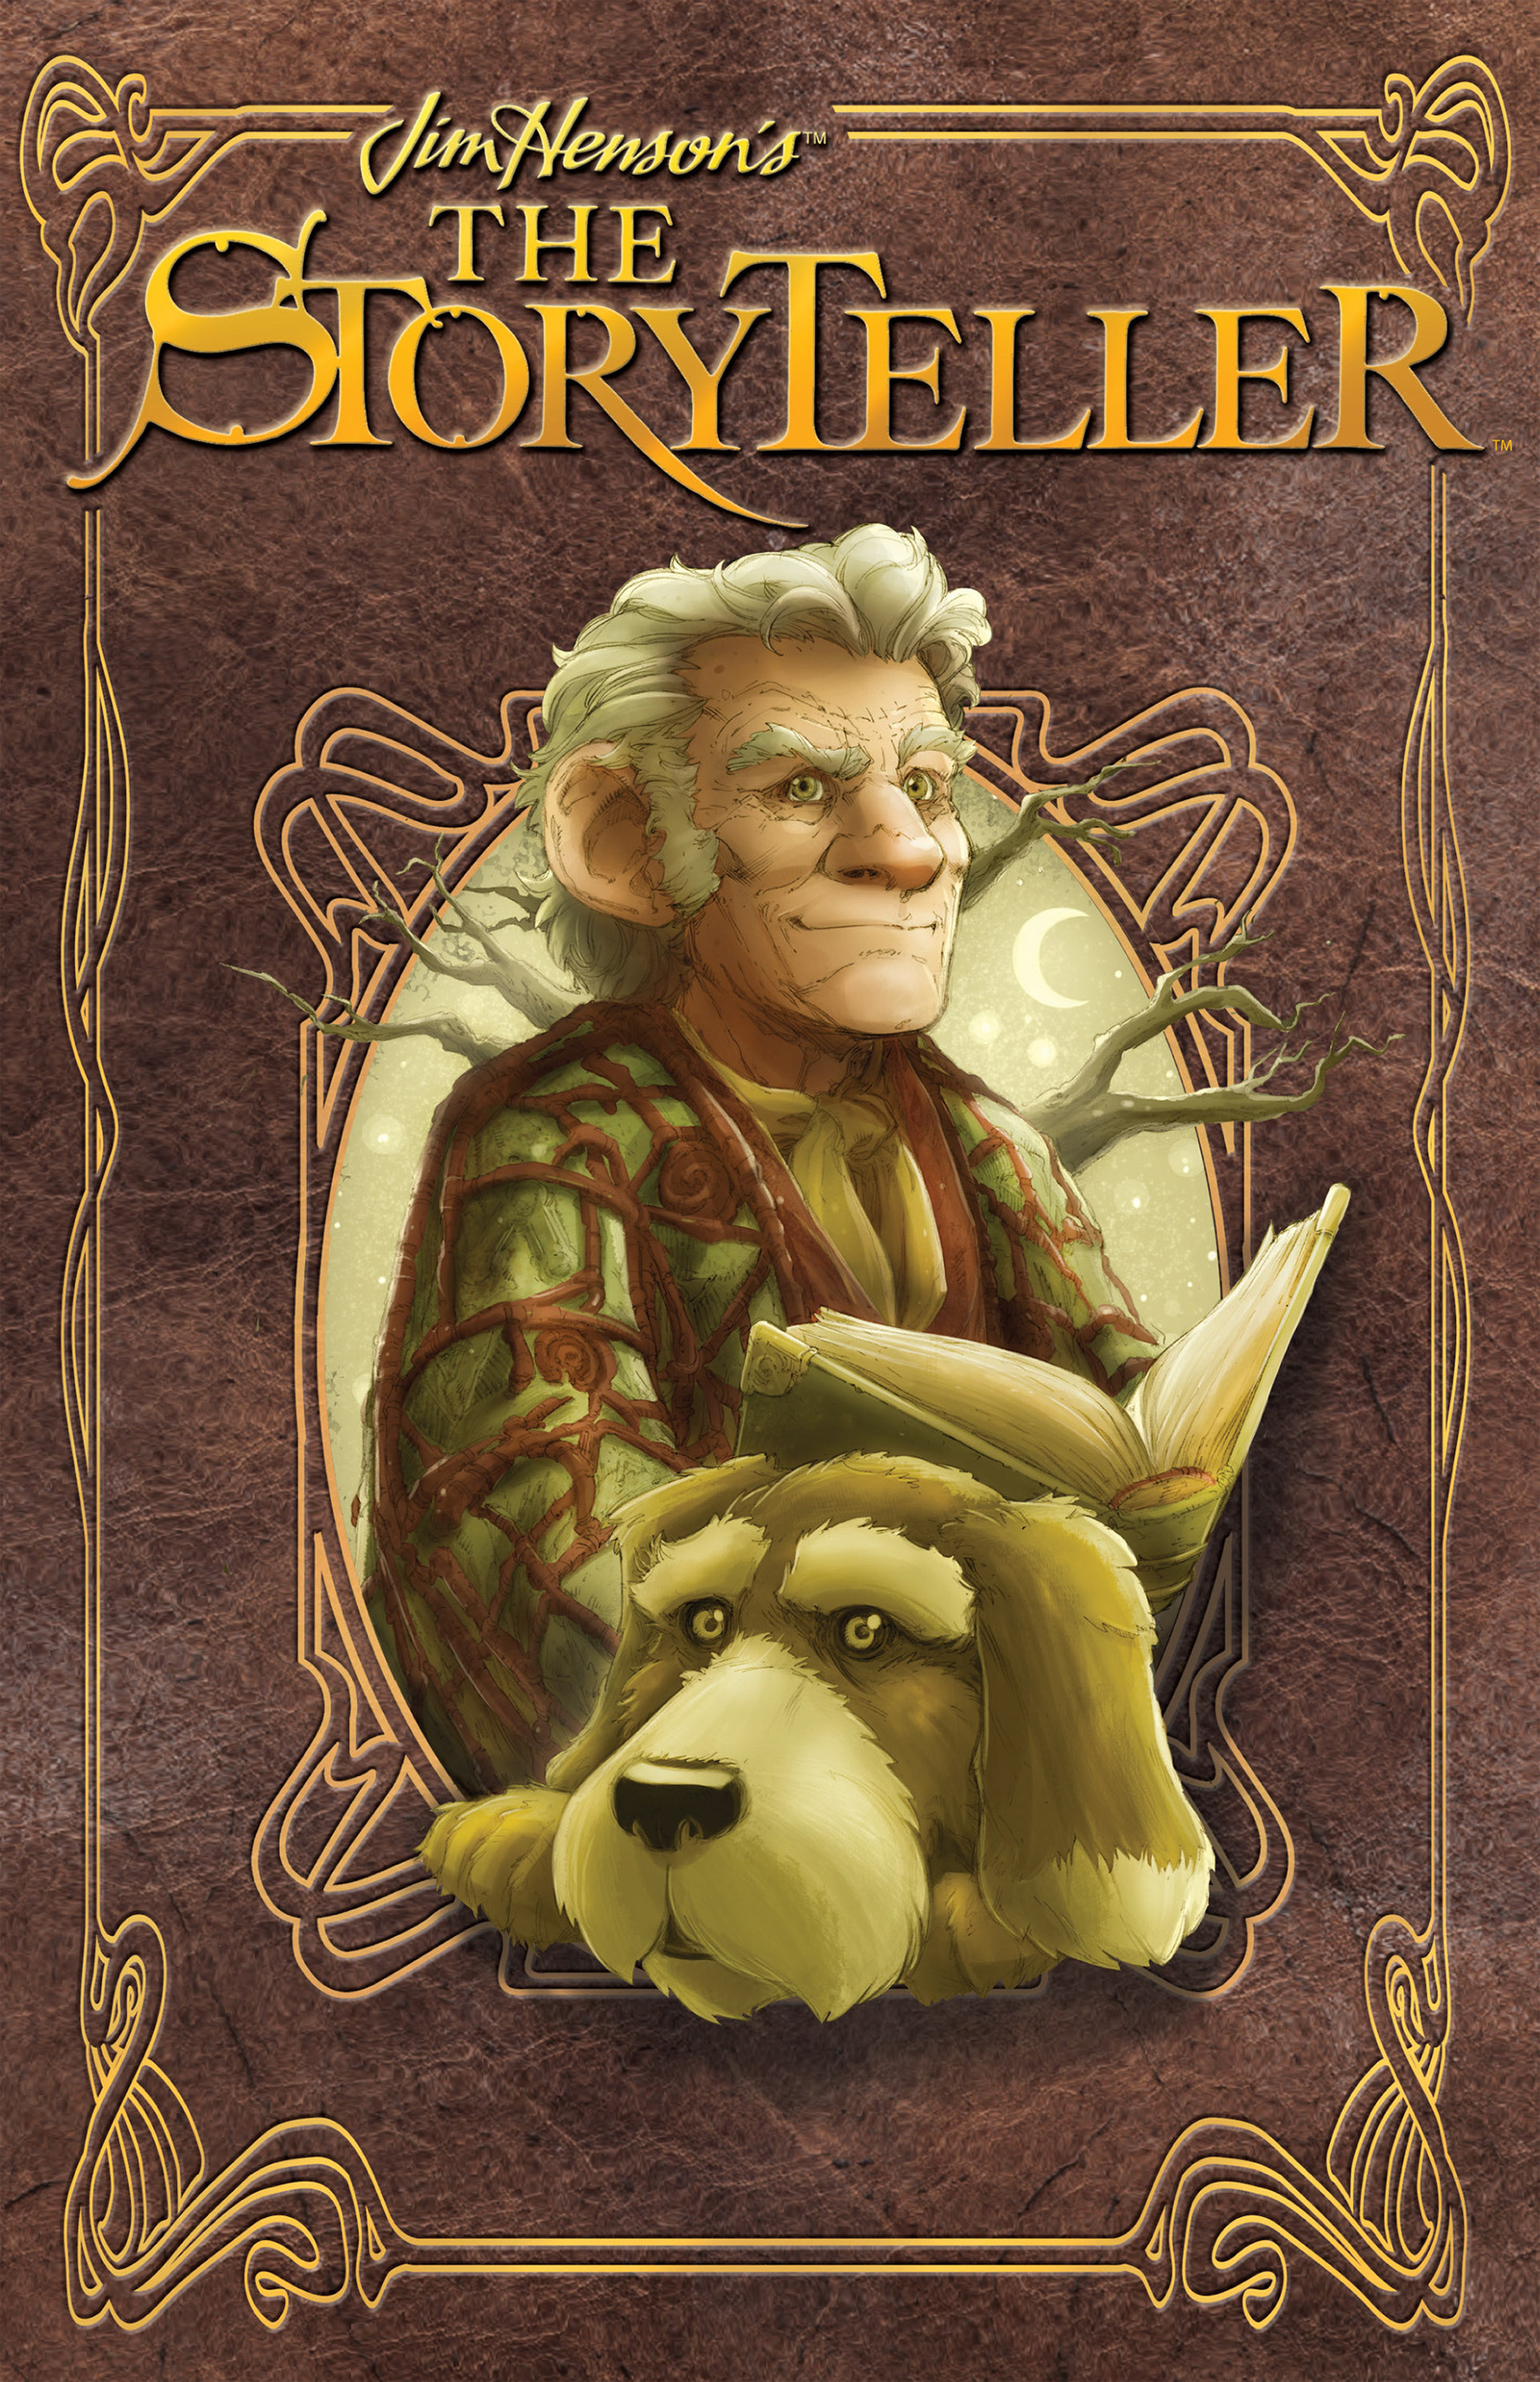 Read online The Storyteller comic -  Issue # Full - 1